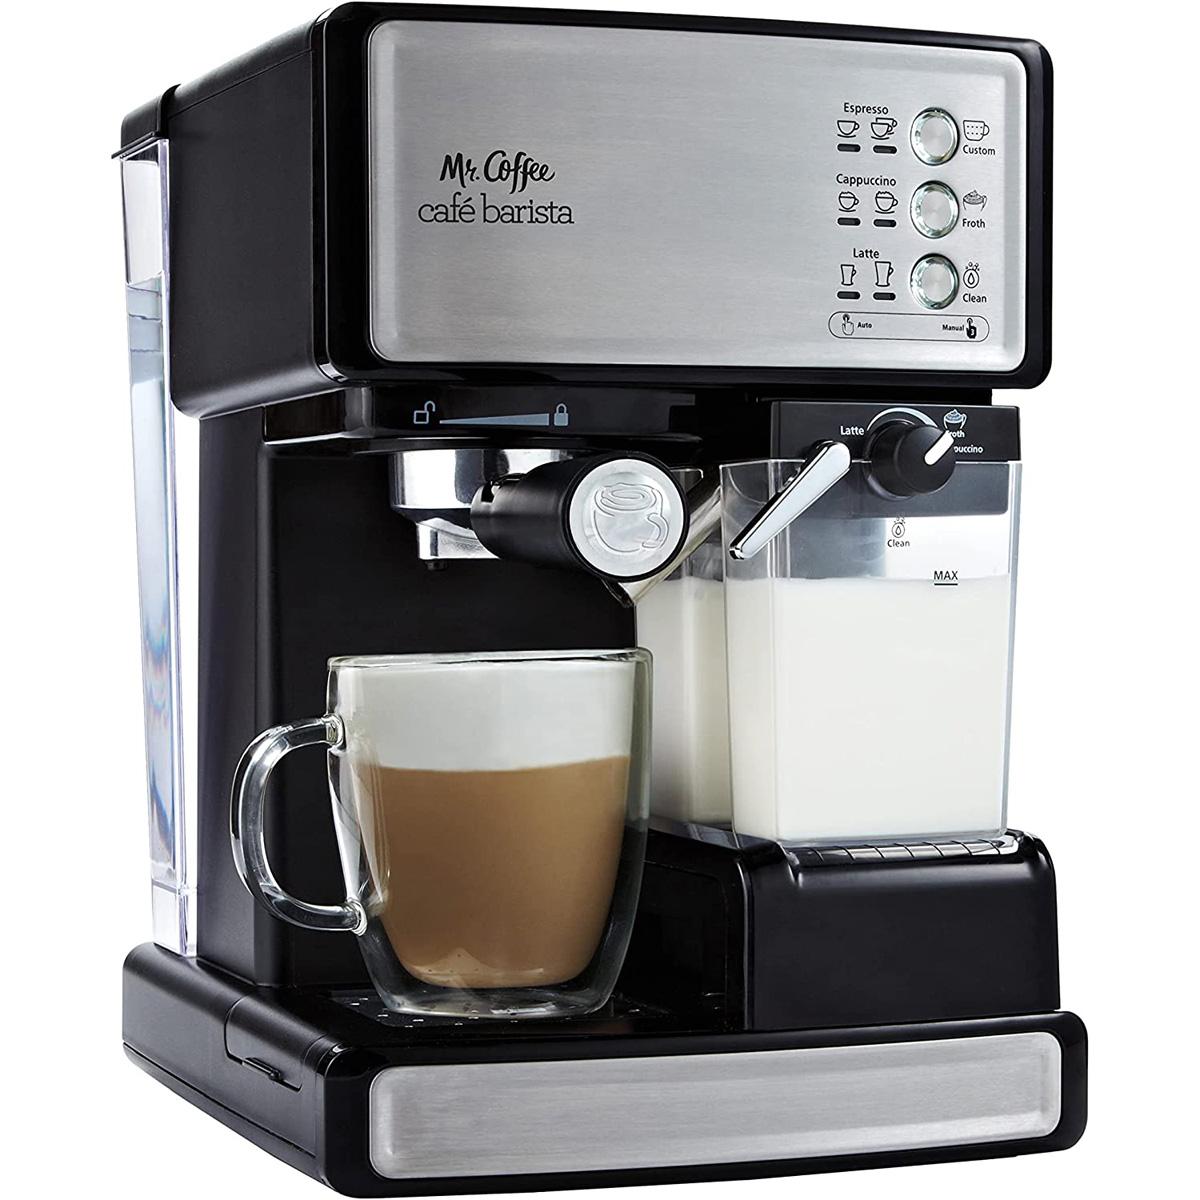 Mr Coffee Cafe Barista Espresso and Cappuccino Machine for $139.99 Shipped